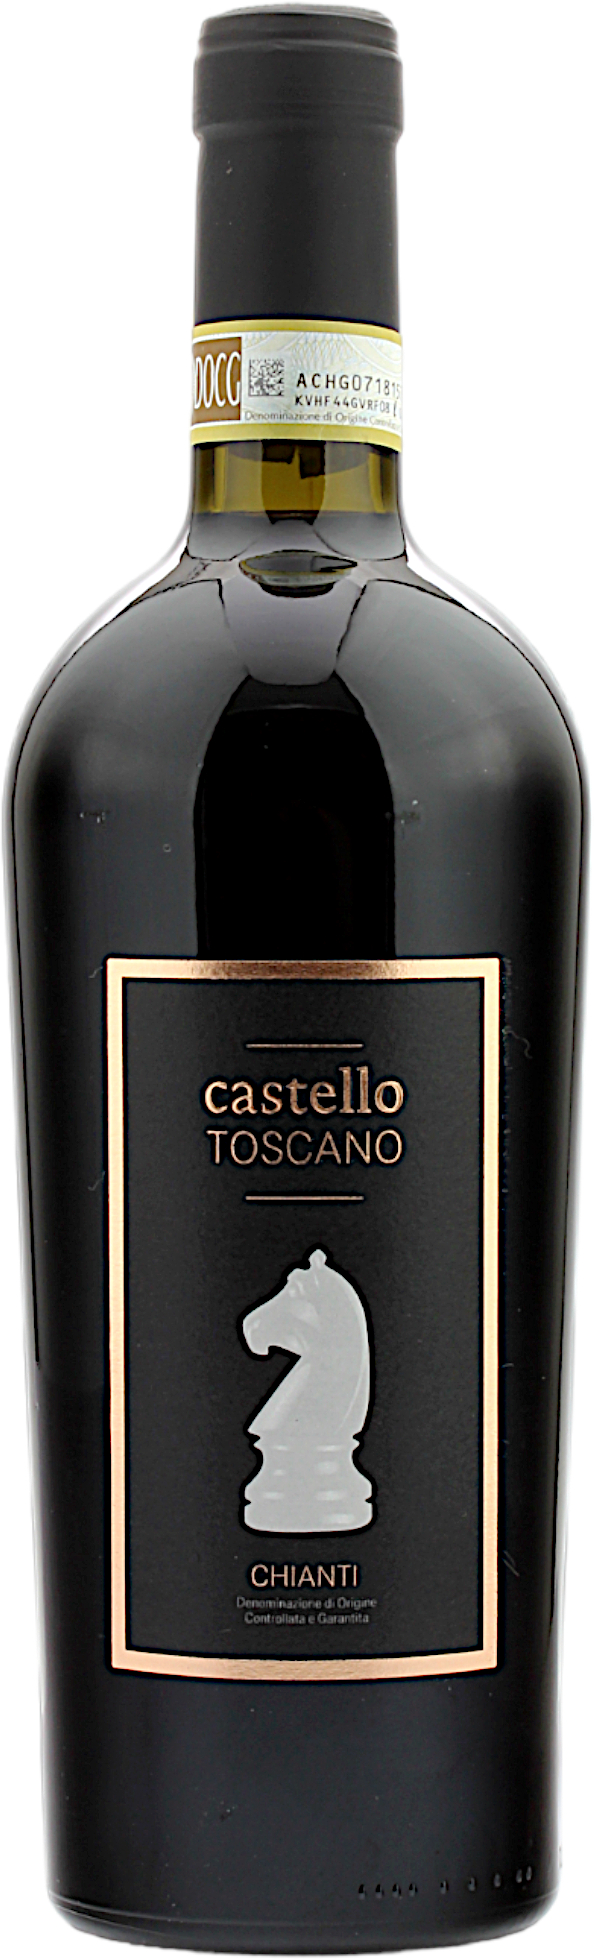 Castello Toscano Chianti DOCG 13.5% 0,75l